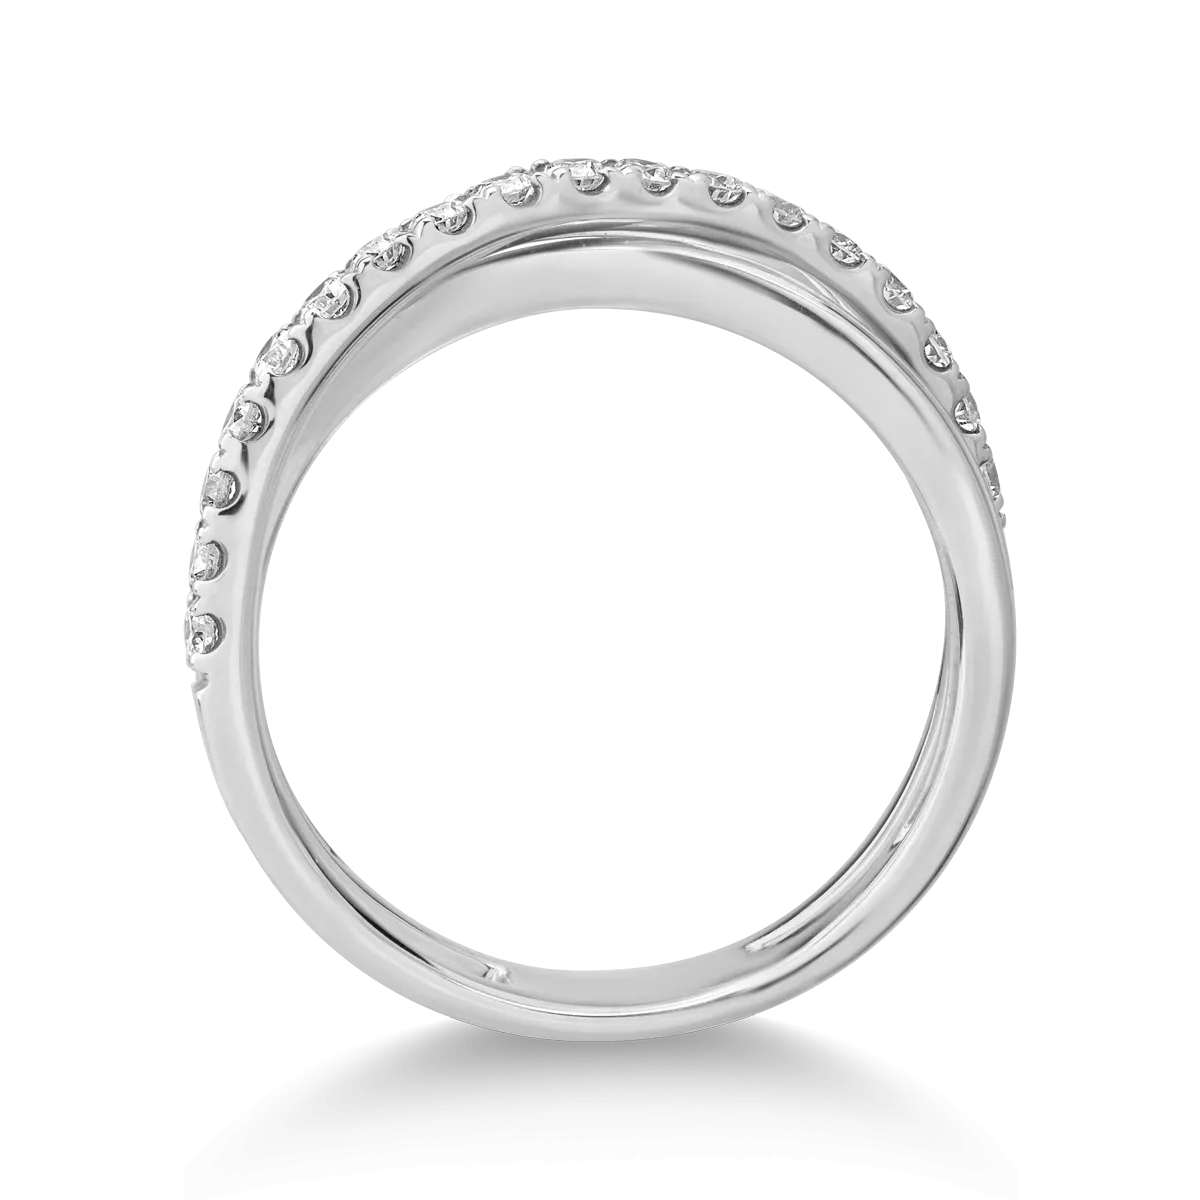 14 karátos fehérarany gyűrű 0.47 karátos gyémántokkal